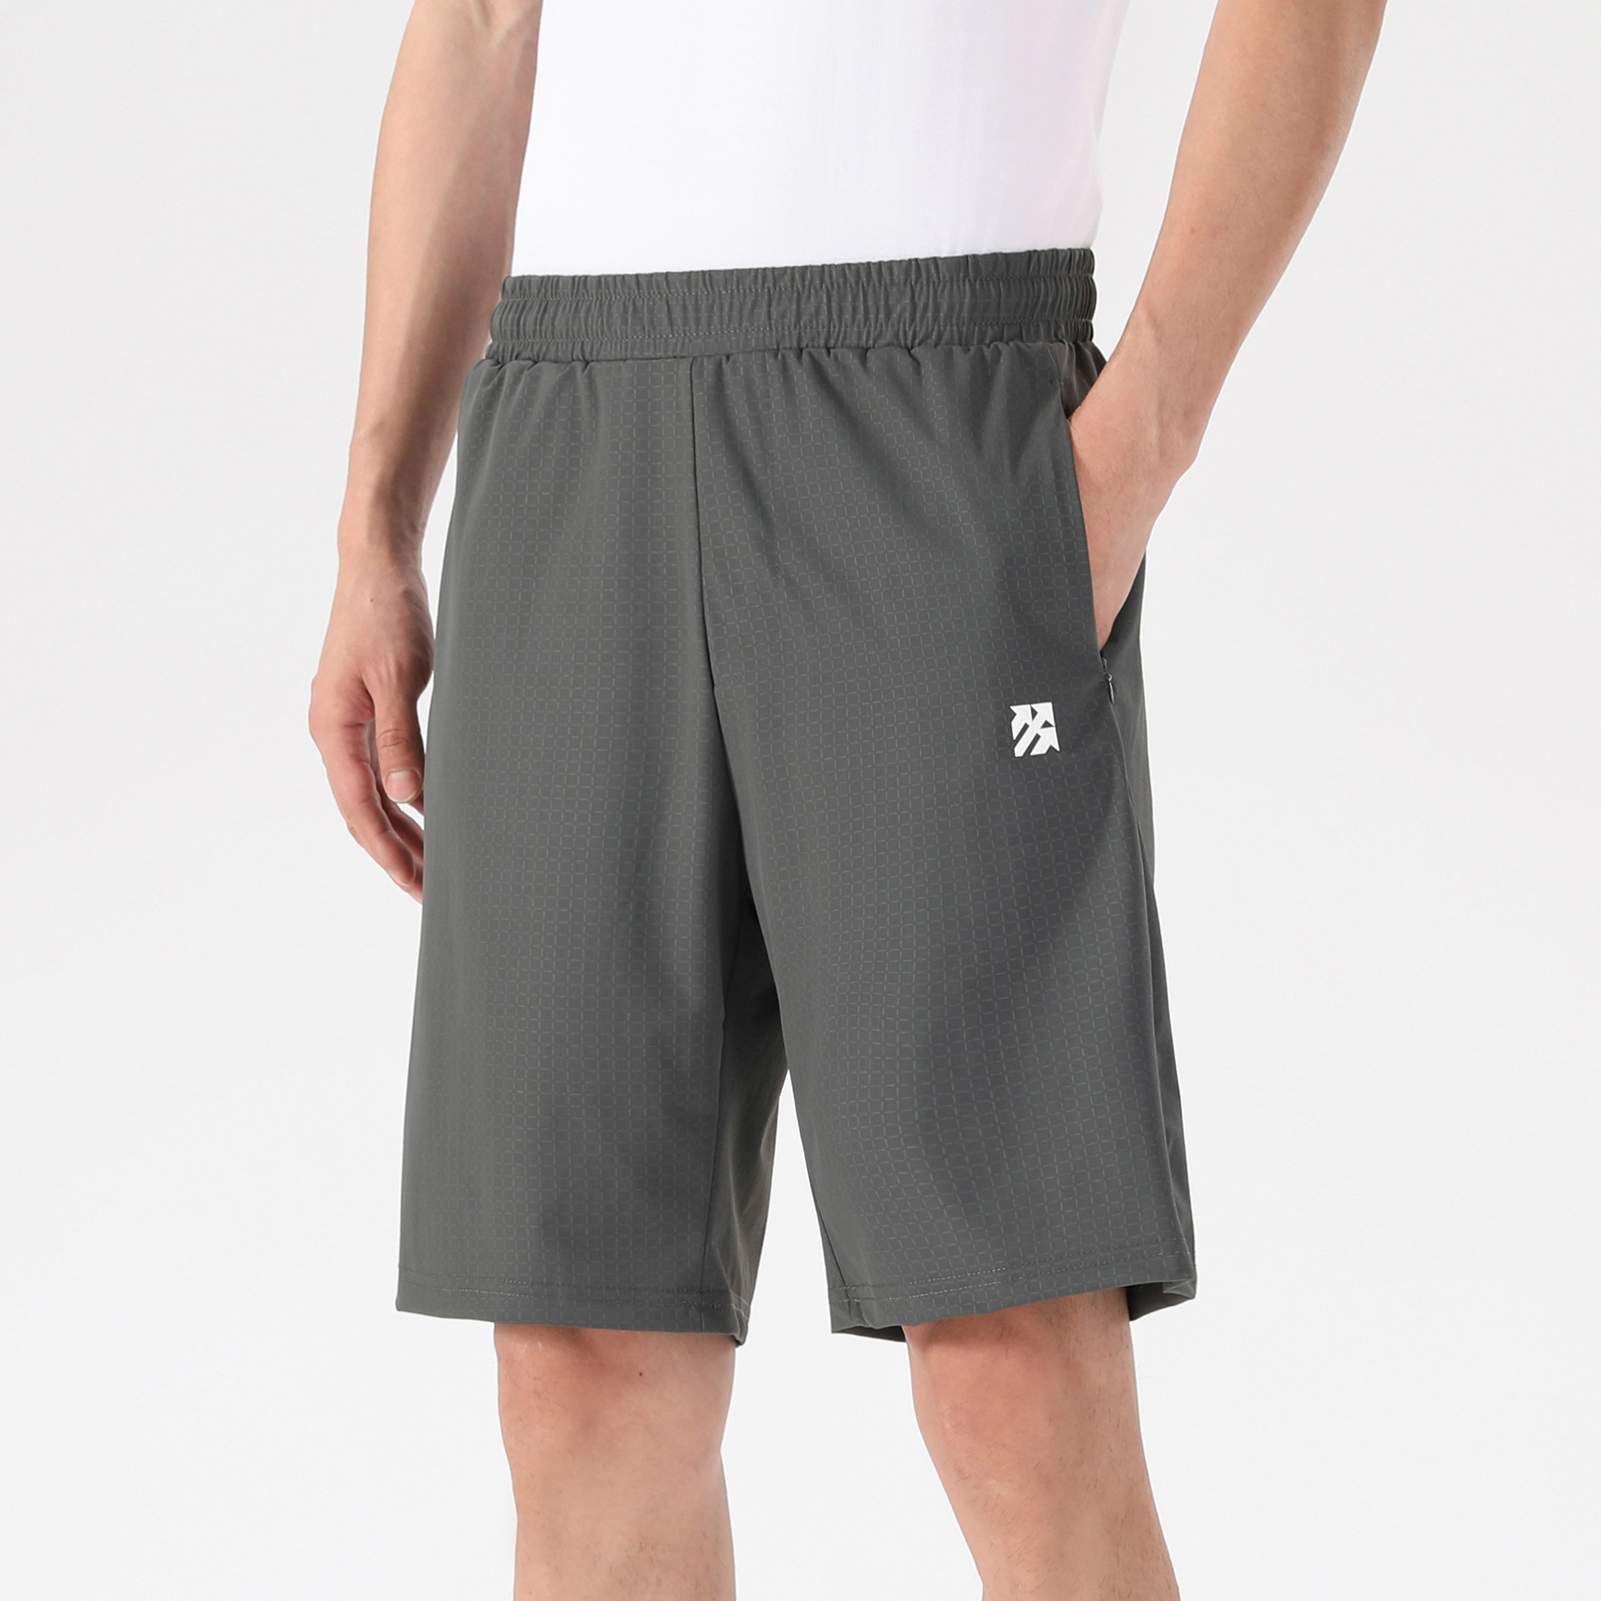 Senbwl Men's Quick Drying Running Shorts